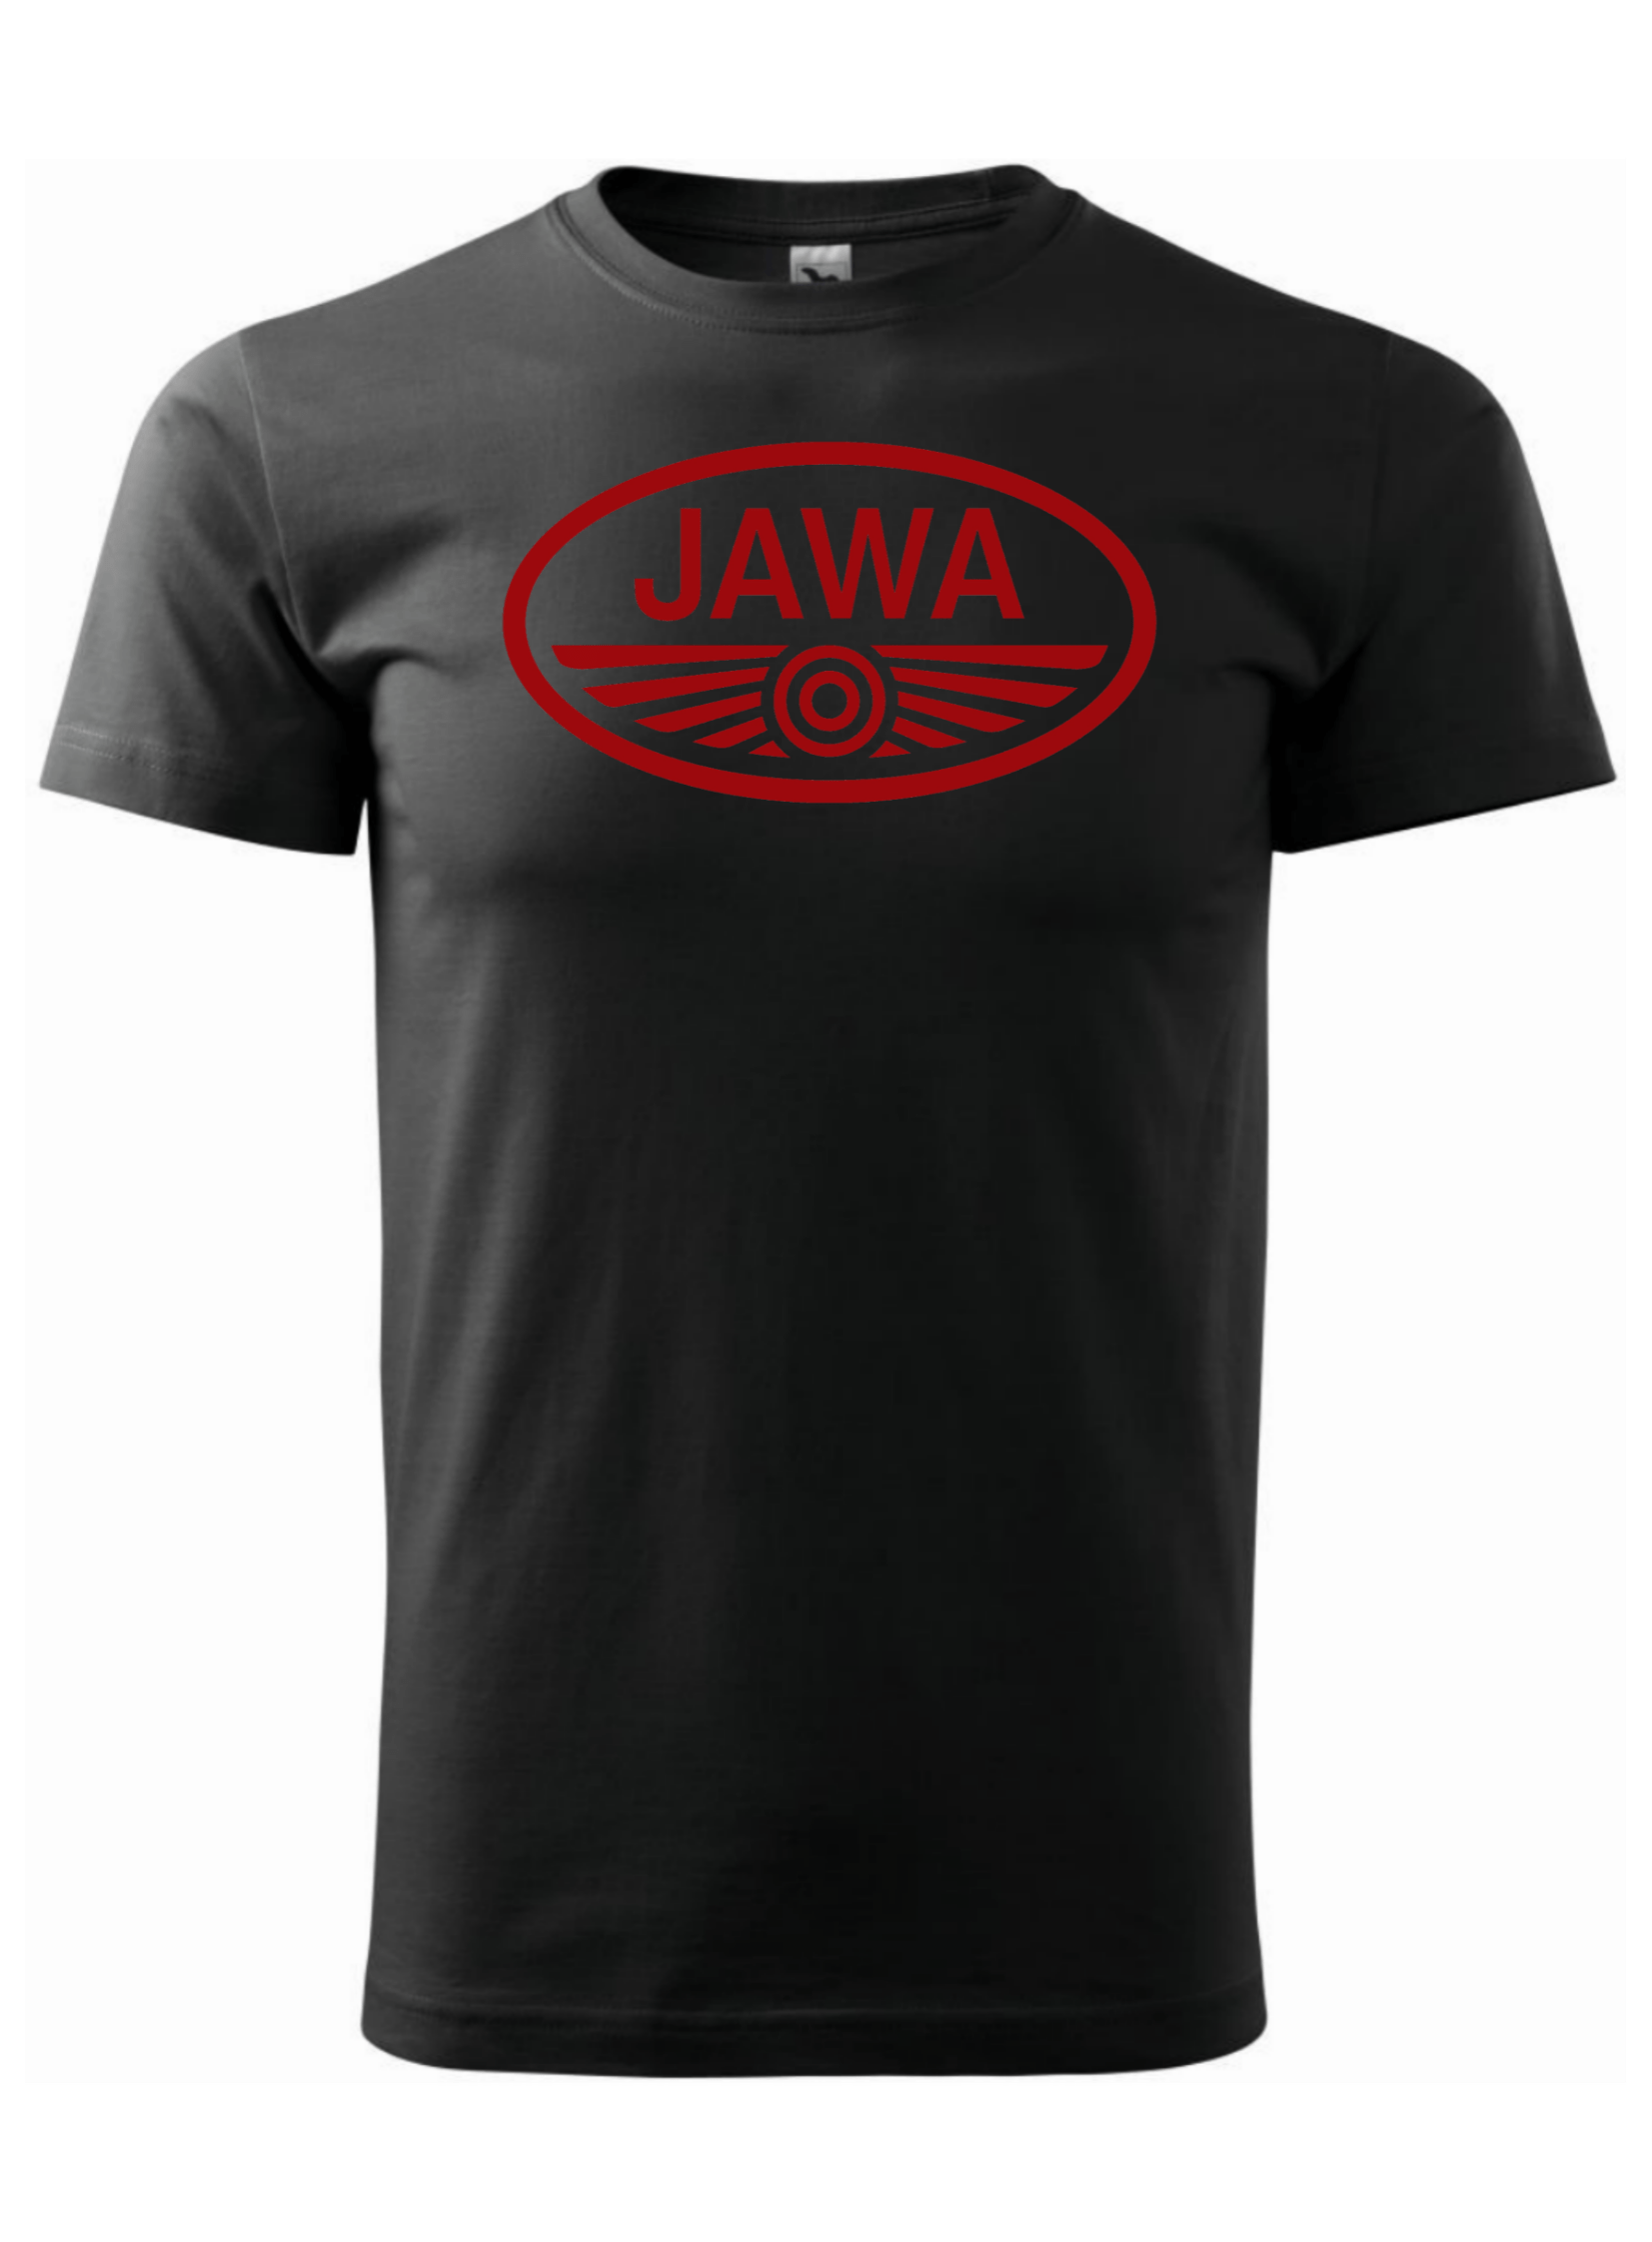 Pánské tričko s potiskem značky Jawa